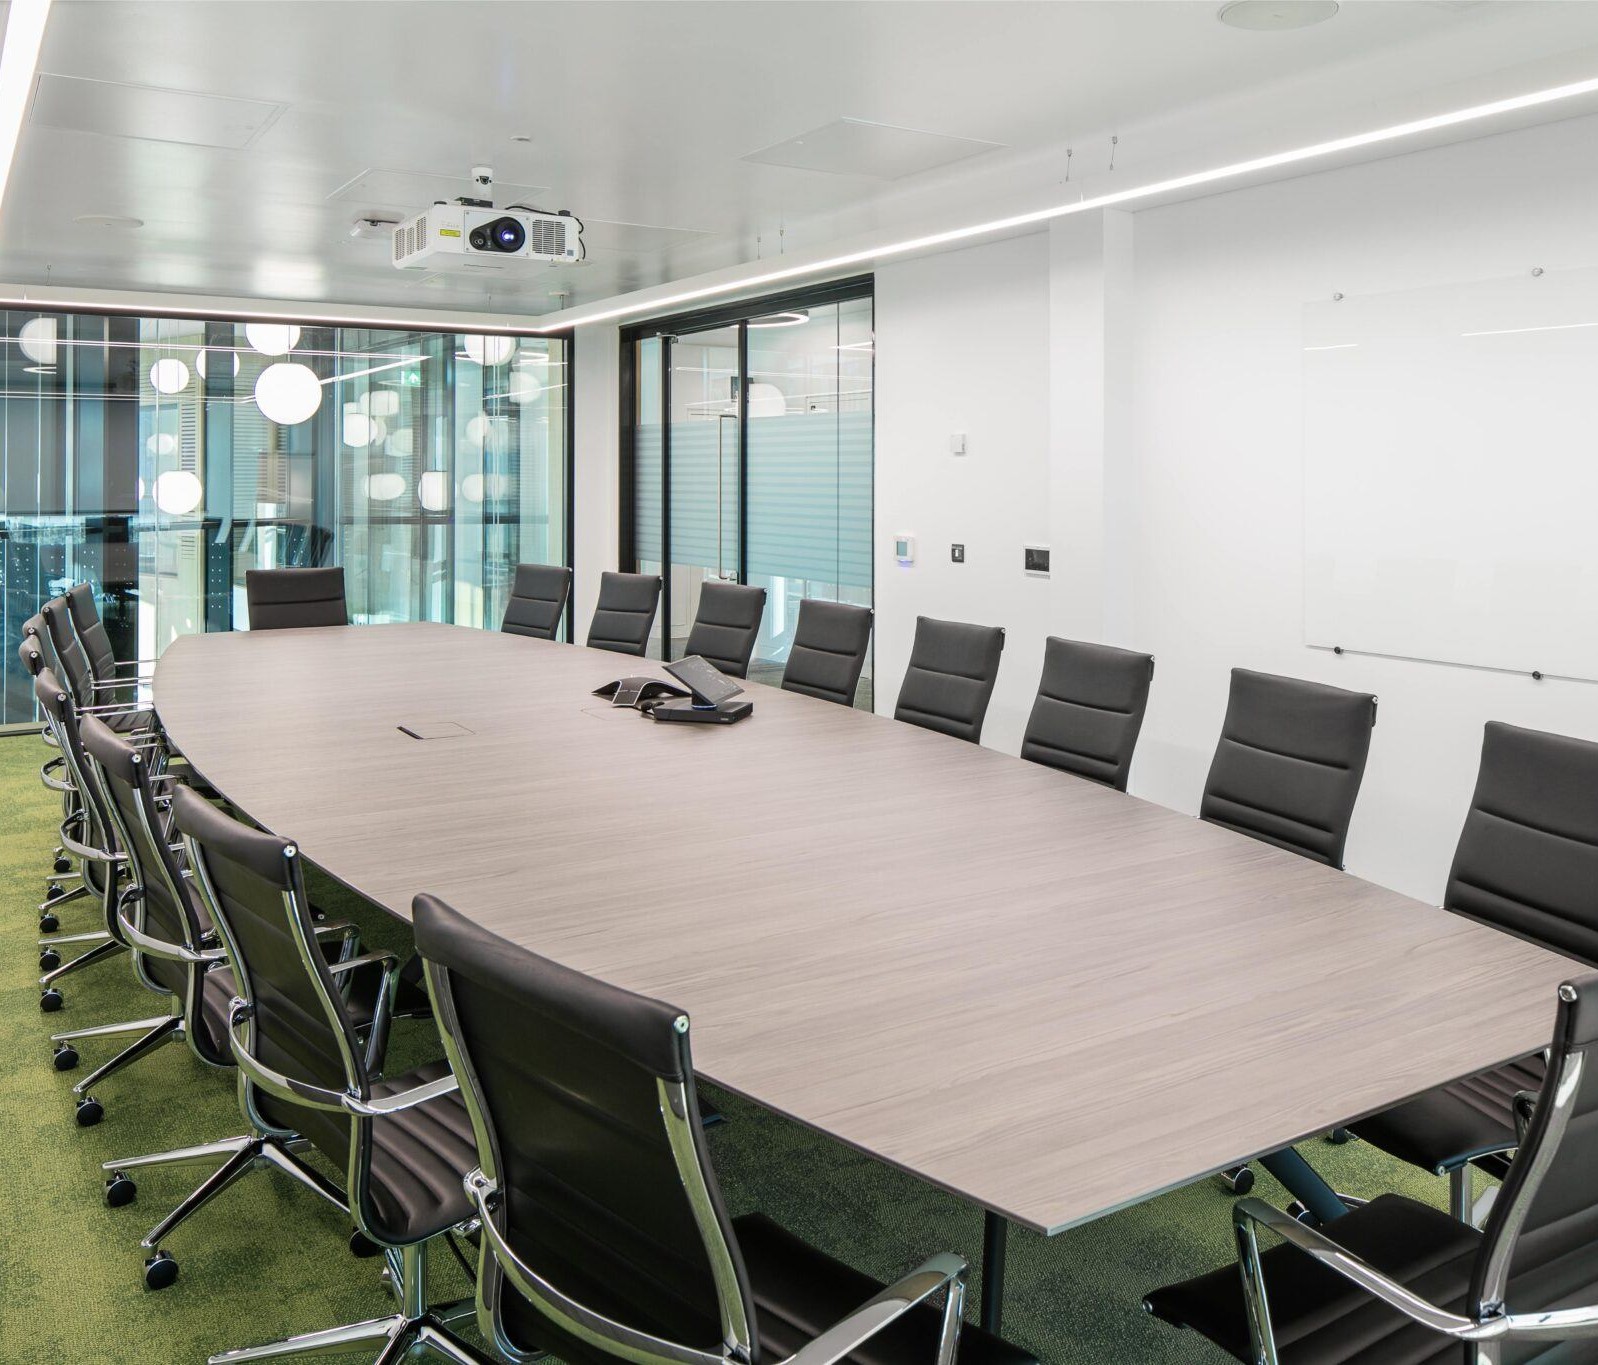 Nexus meeting room - large